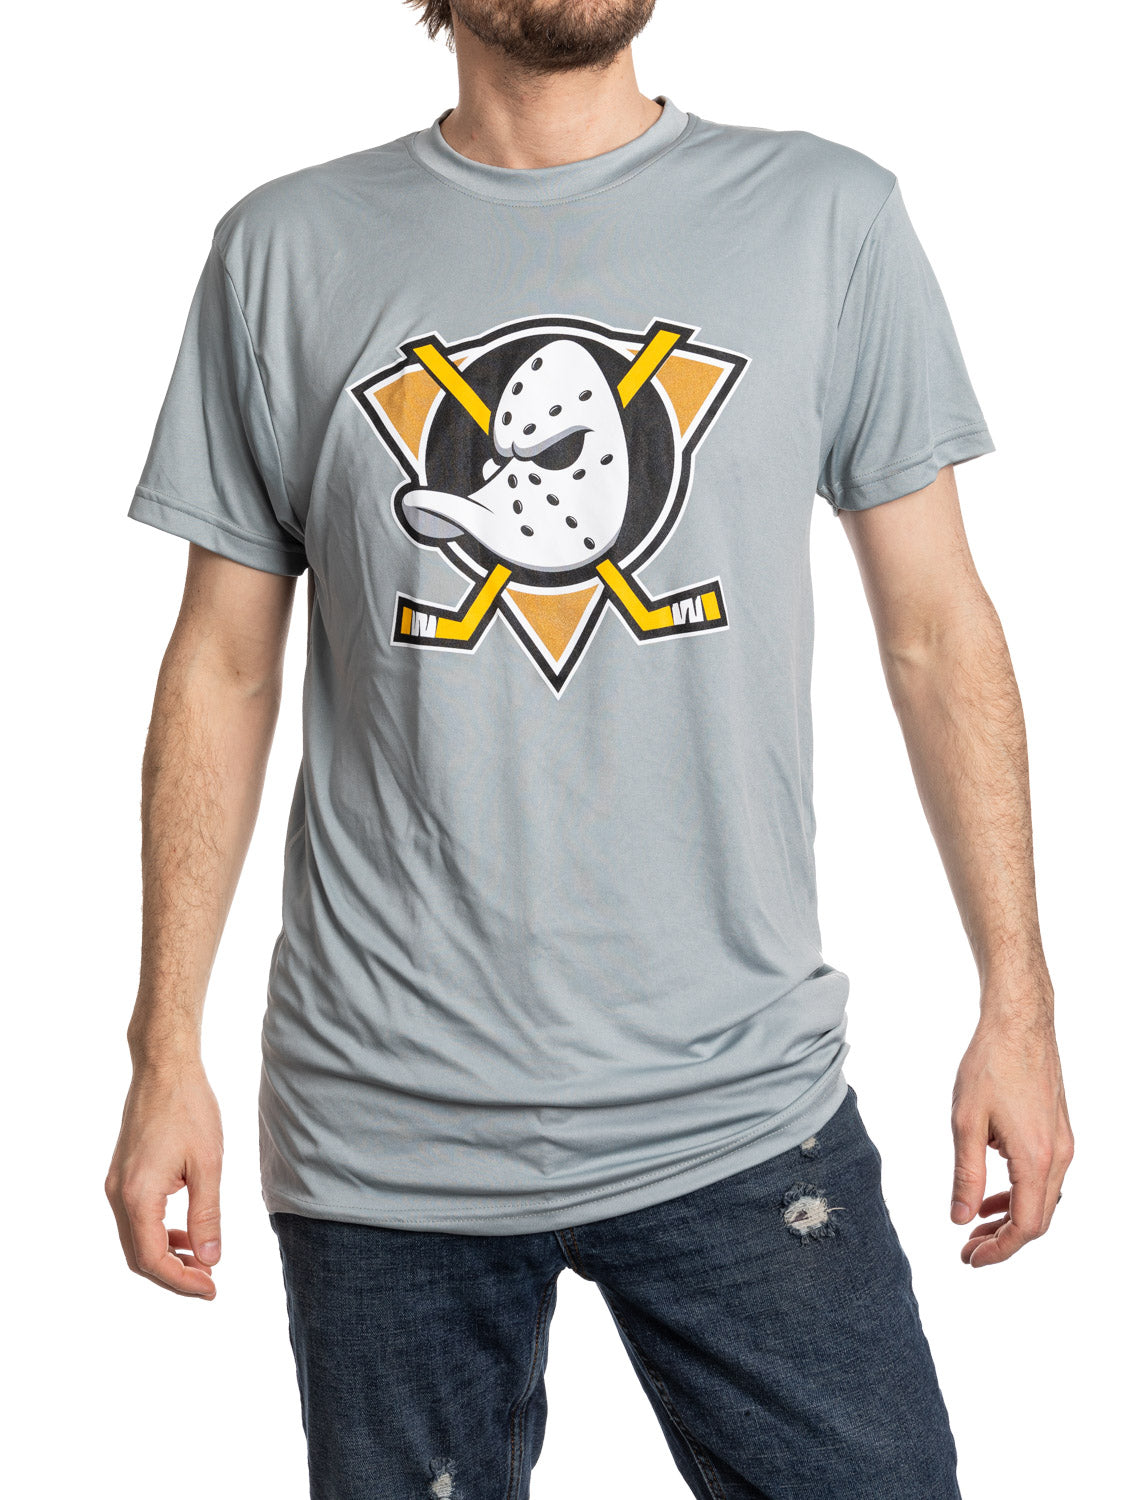 Anaheim Ducks Short Sleeve Rashguard T Shirt - Alternate Logo